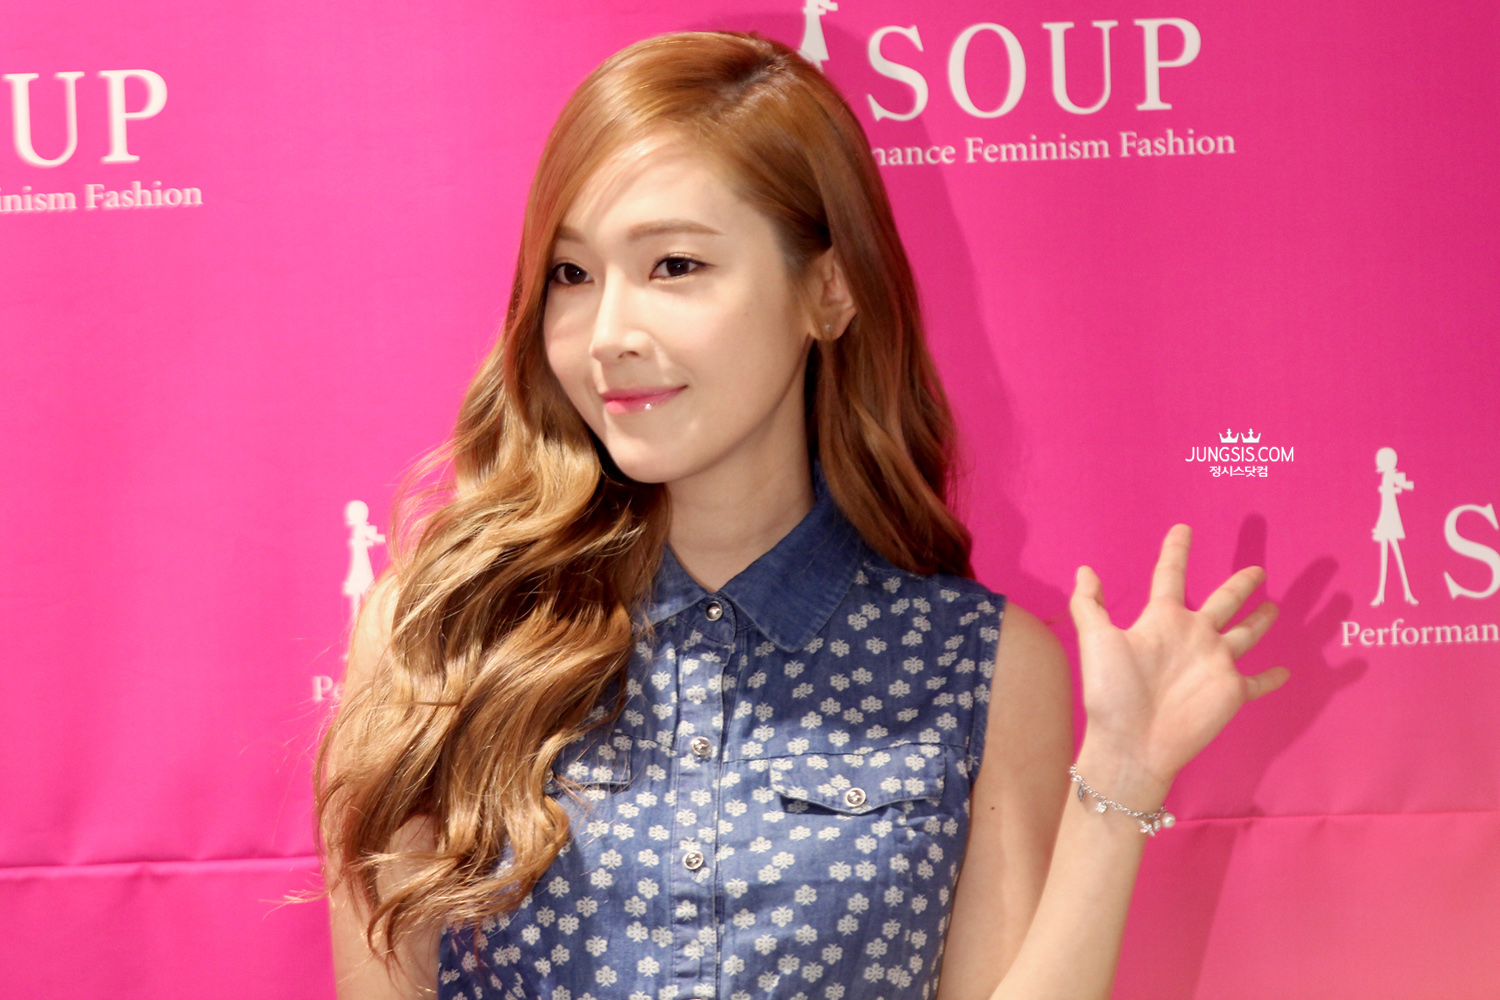 [PIC][04-04-2014]Jessica tham dự buổi fansign cho thương hiệu "SOUP" vào trưa nay - Page 3 2364124253A44A601550DA